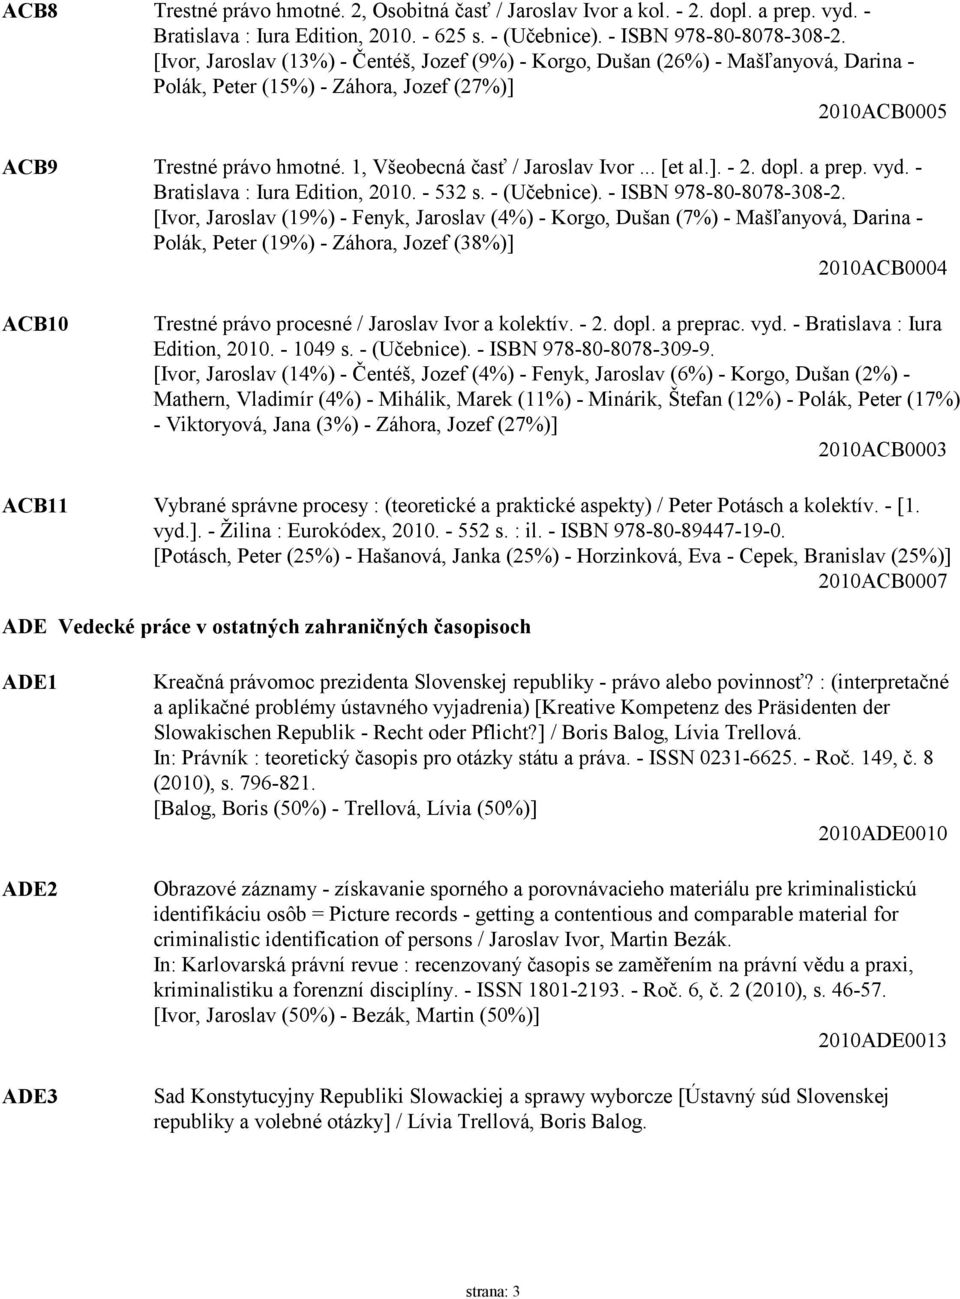 1, Všeobecná časť / Jaroslav Ivor... [et al.]. - 2. dopl. a prep. vyd. - Bratislava : Iura Edition, 2010. - 532 s. - (Učebnice). - ISBN 978-80-8078-308-2.